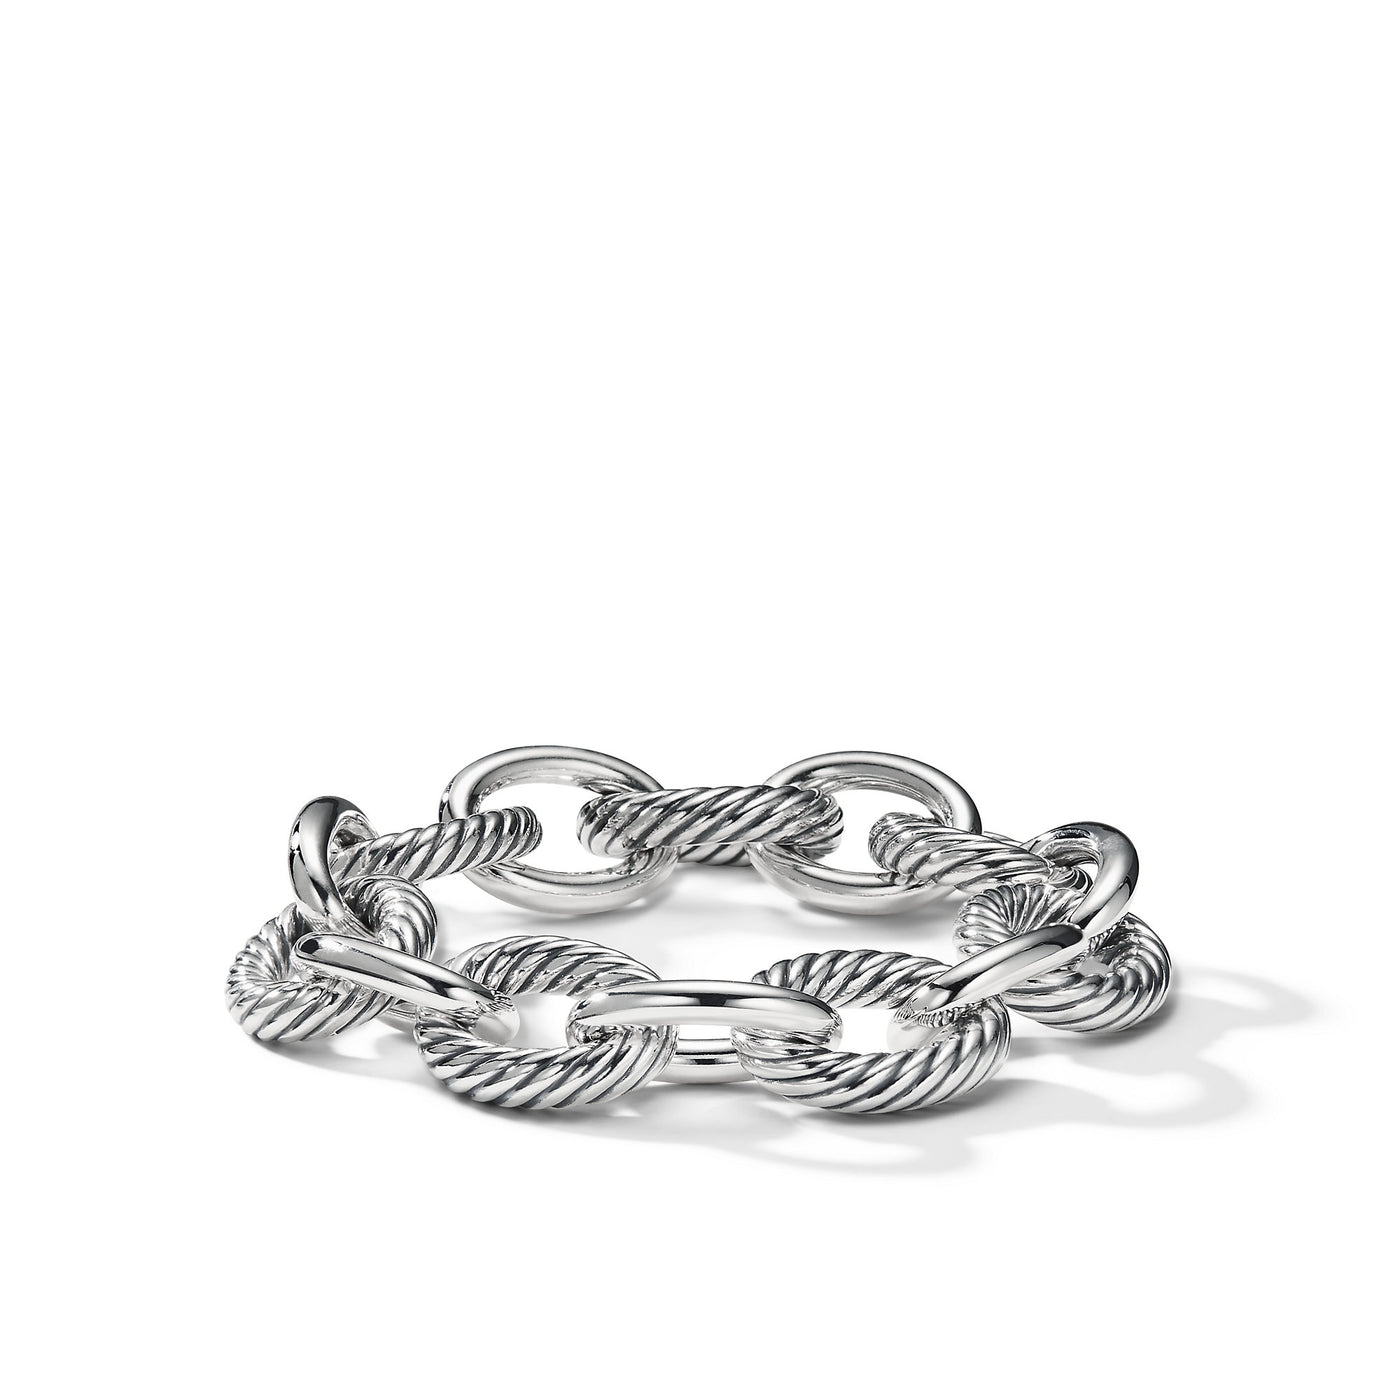 Oval Link Chain Bracelet in Sterling Silver\, 17mm